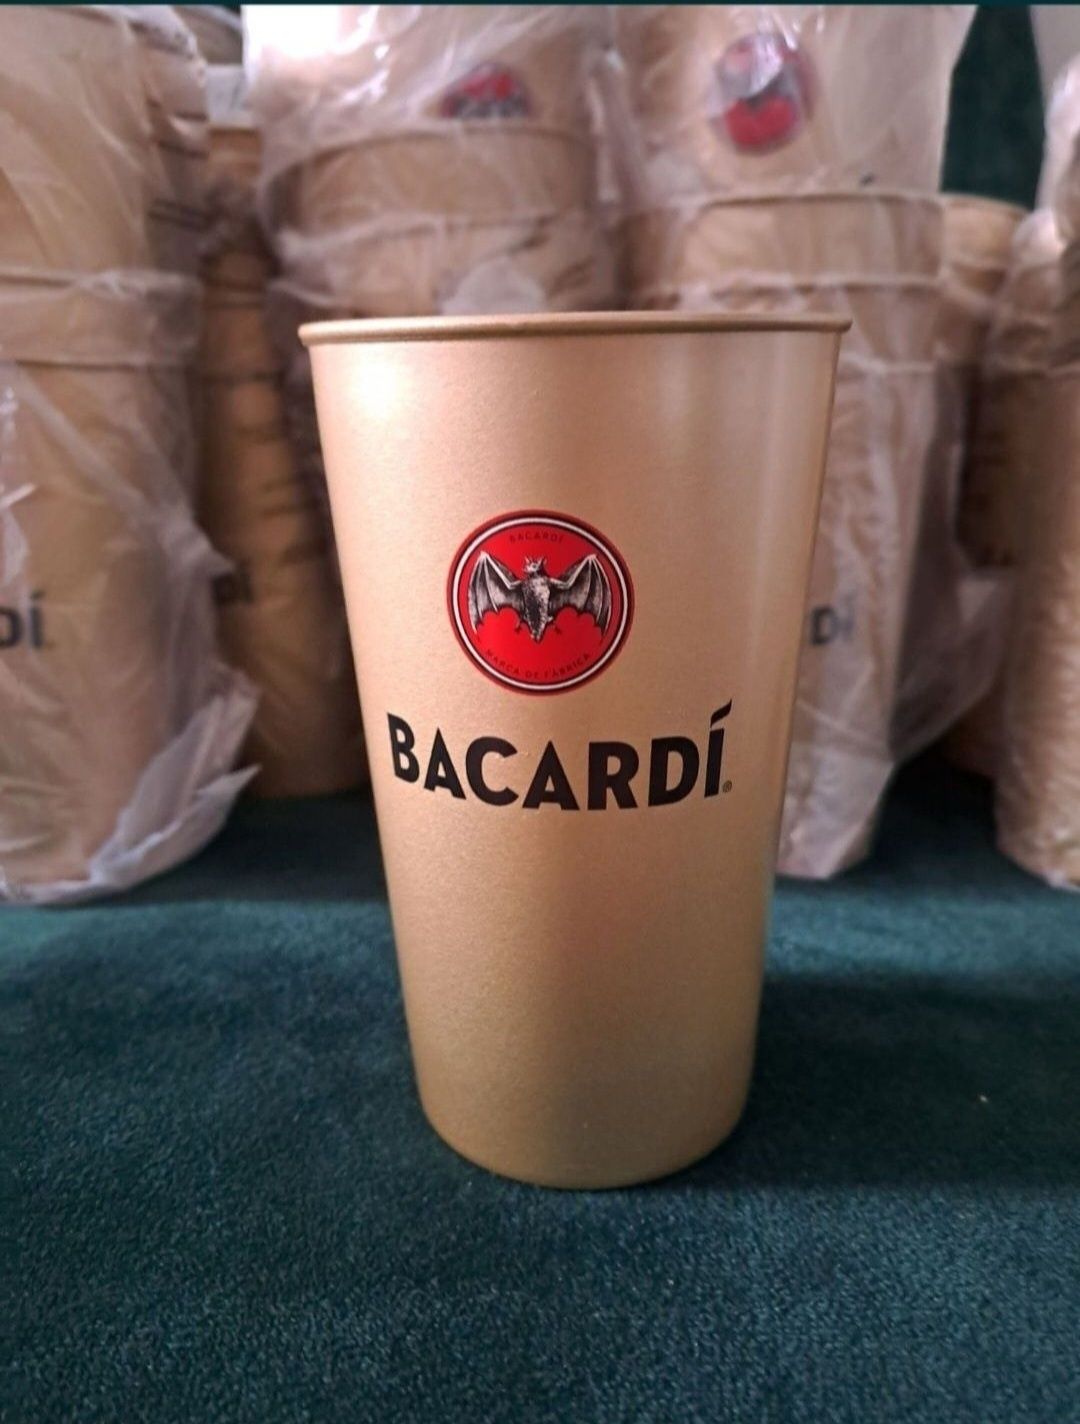 14 sztuk x kubek Bacardi o pojemności
360 ml